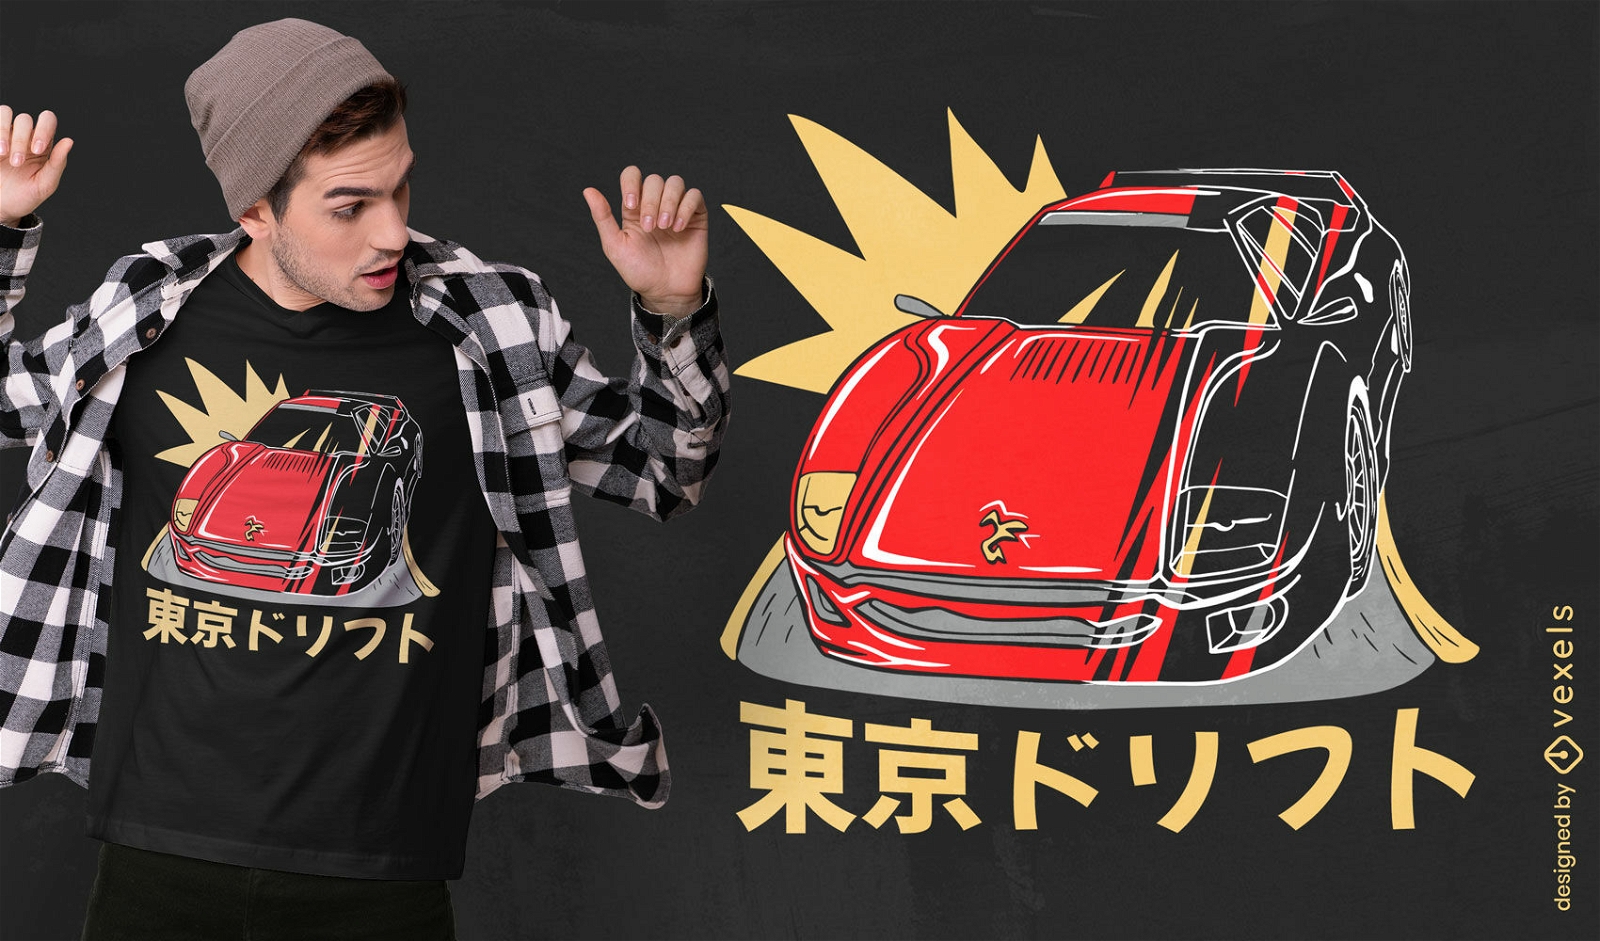 Carro esportivo japonês e design de camiseta de texto